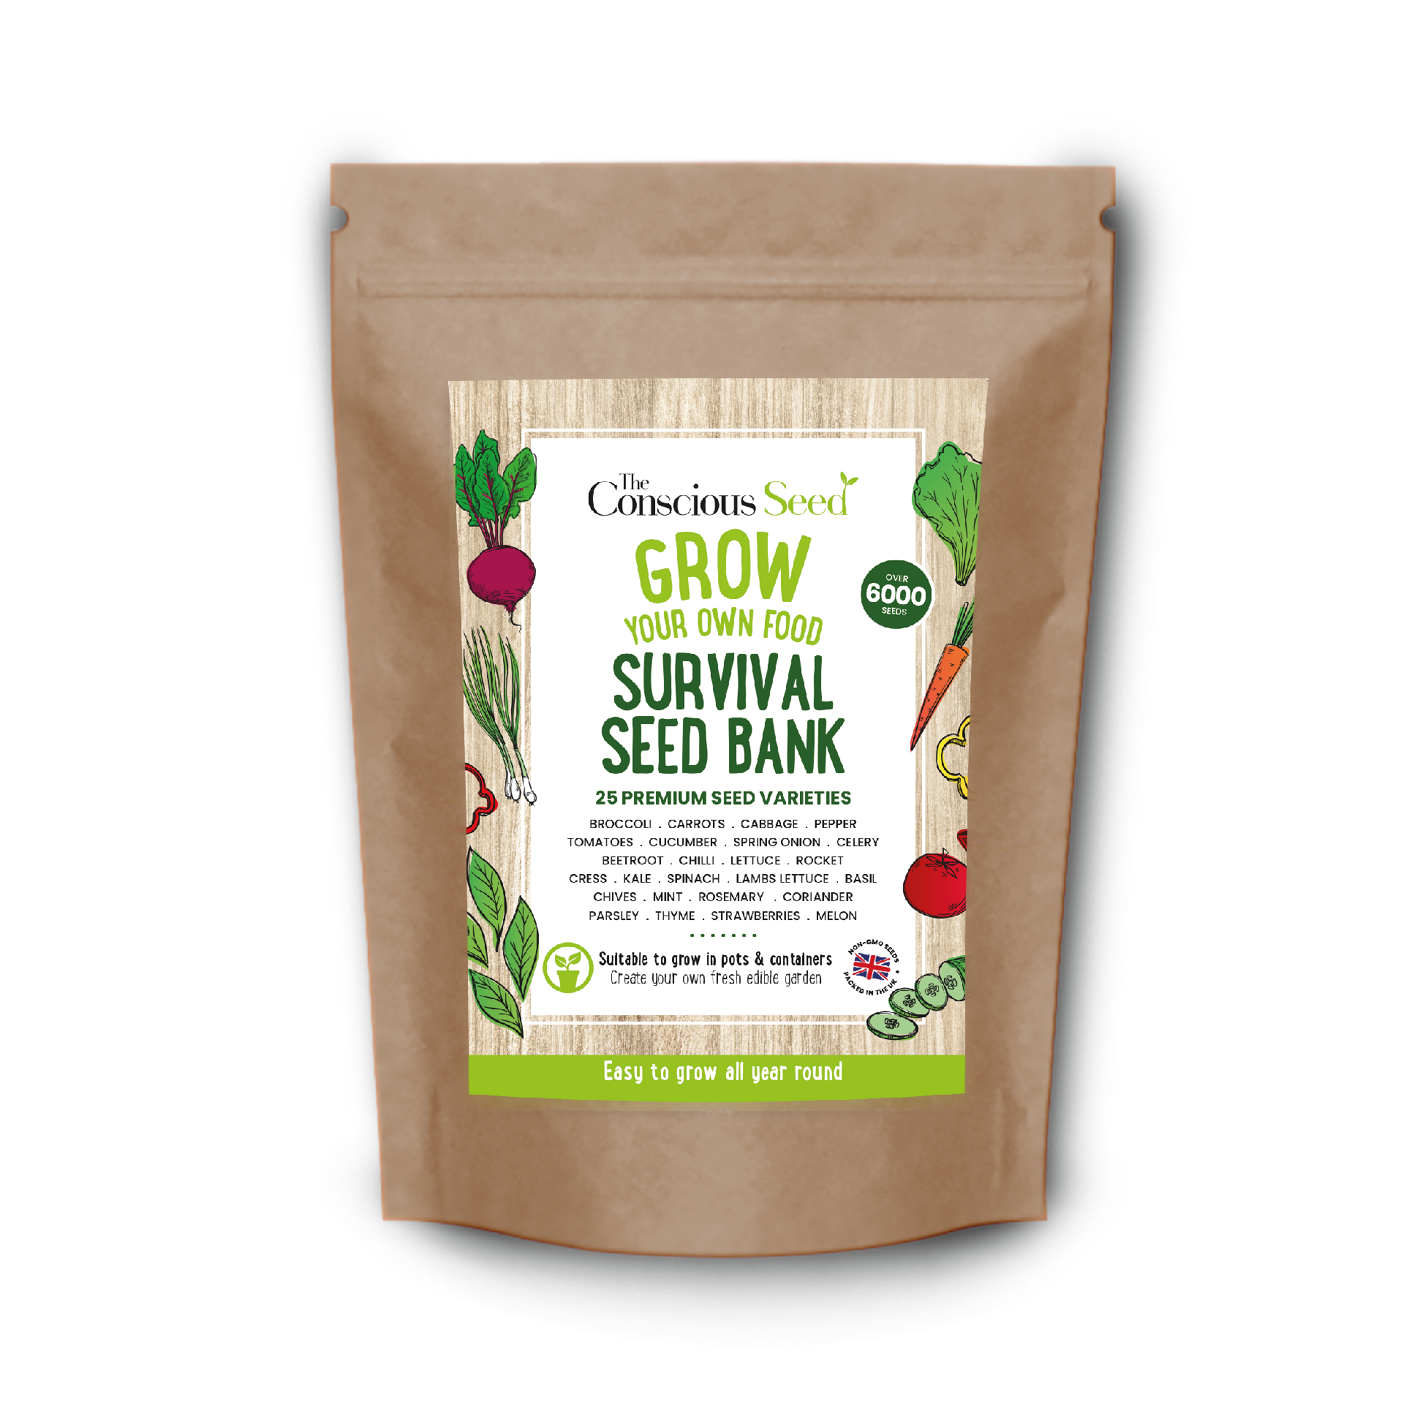 SURVIVAL SEED BANK Survival Kit - 25 Premium Seed Varieties: Over 6000 seeds-0